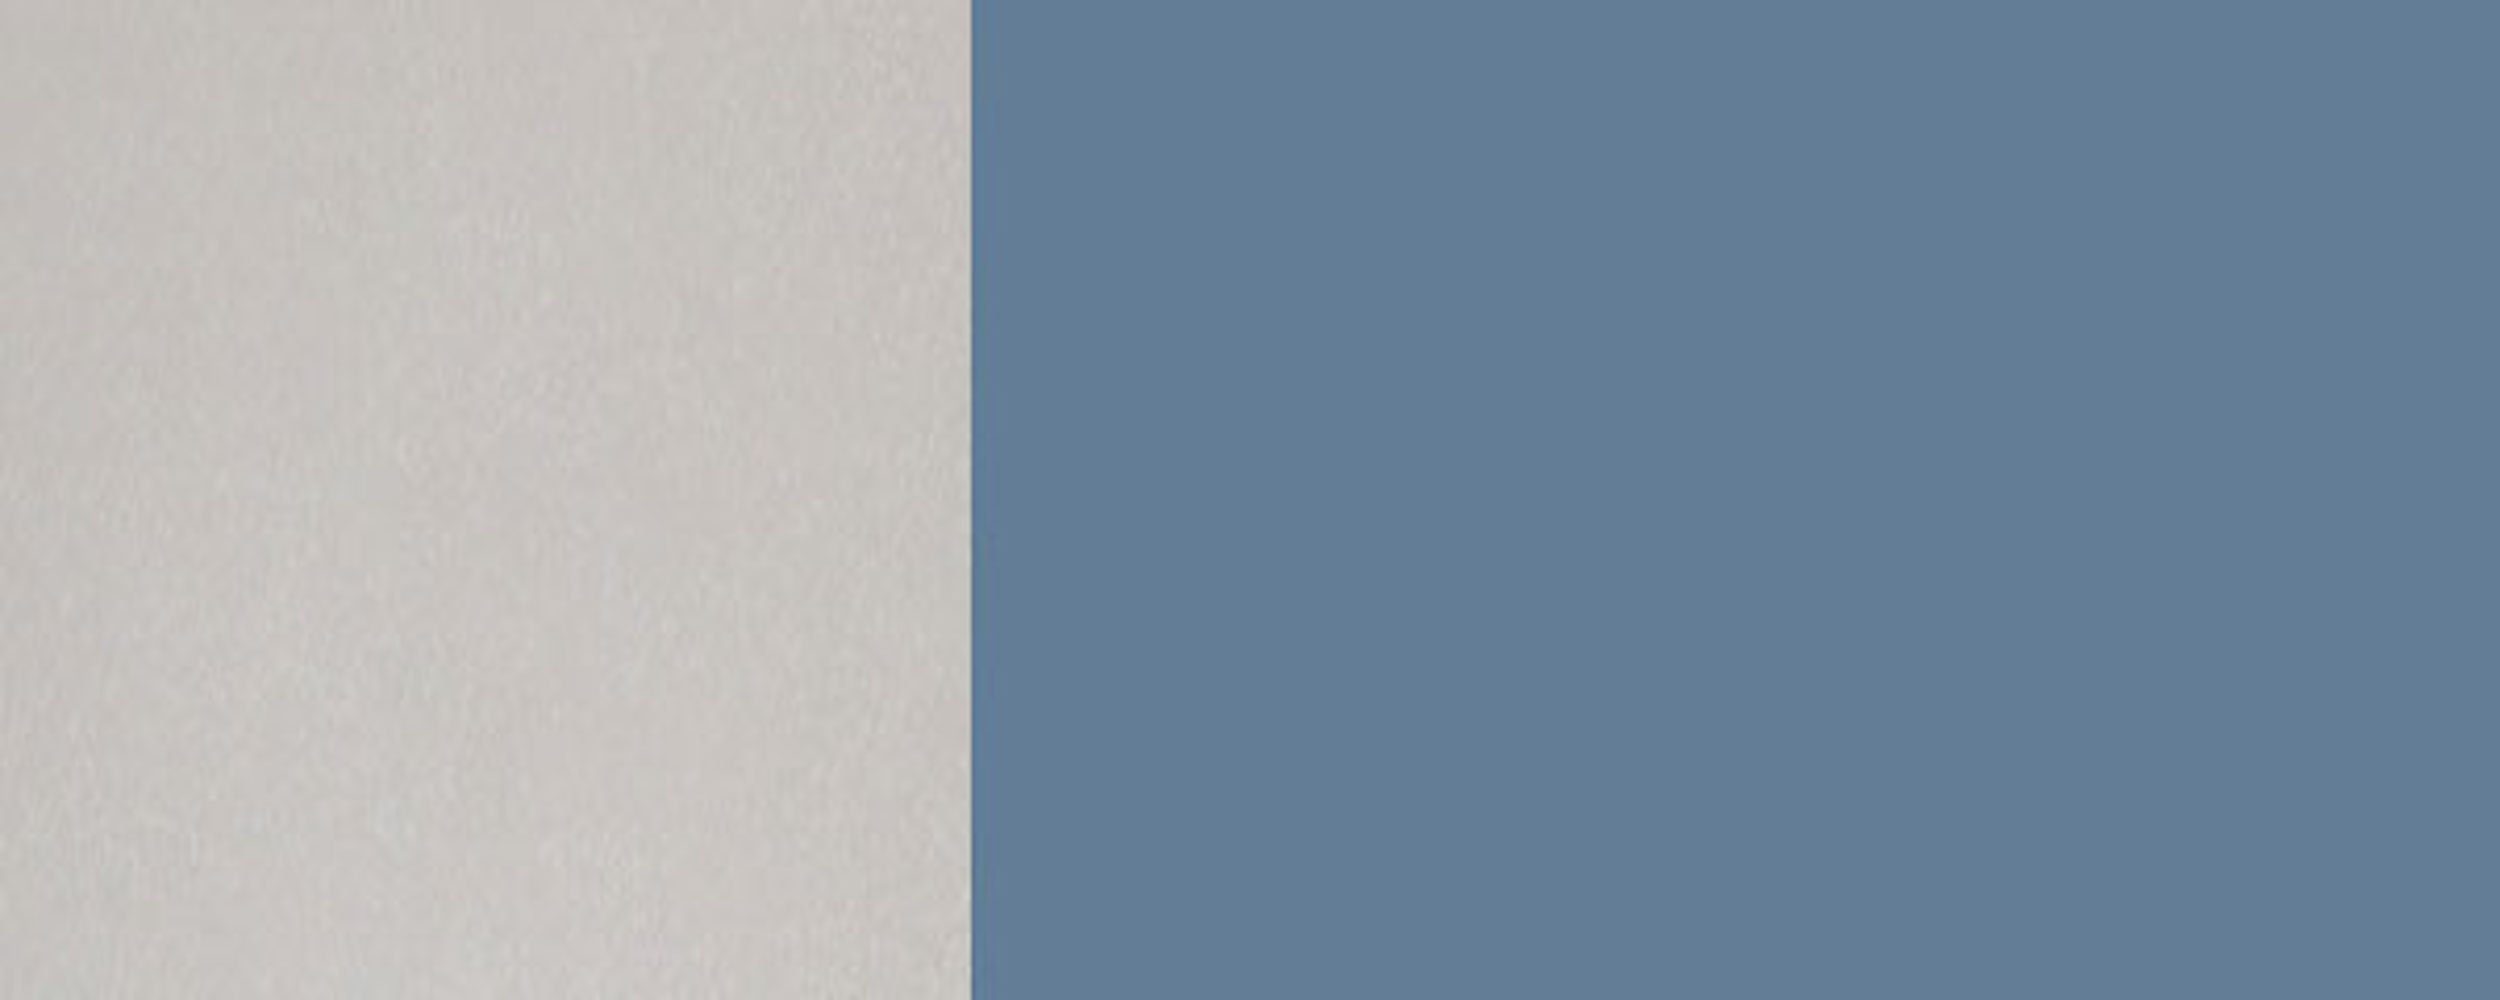 Front- Schubladen Florence Feldmann-Wohnen grifflos wählbar 1 taubenblau Innenschublade Unterschrank Hochglanz 2 RAL 5014 (Florence) & Korpusfarbe